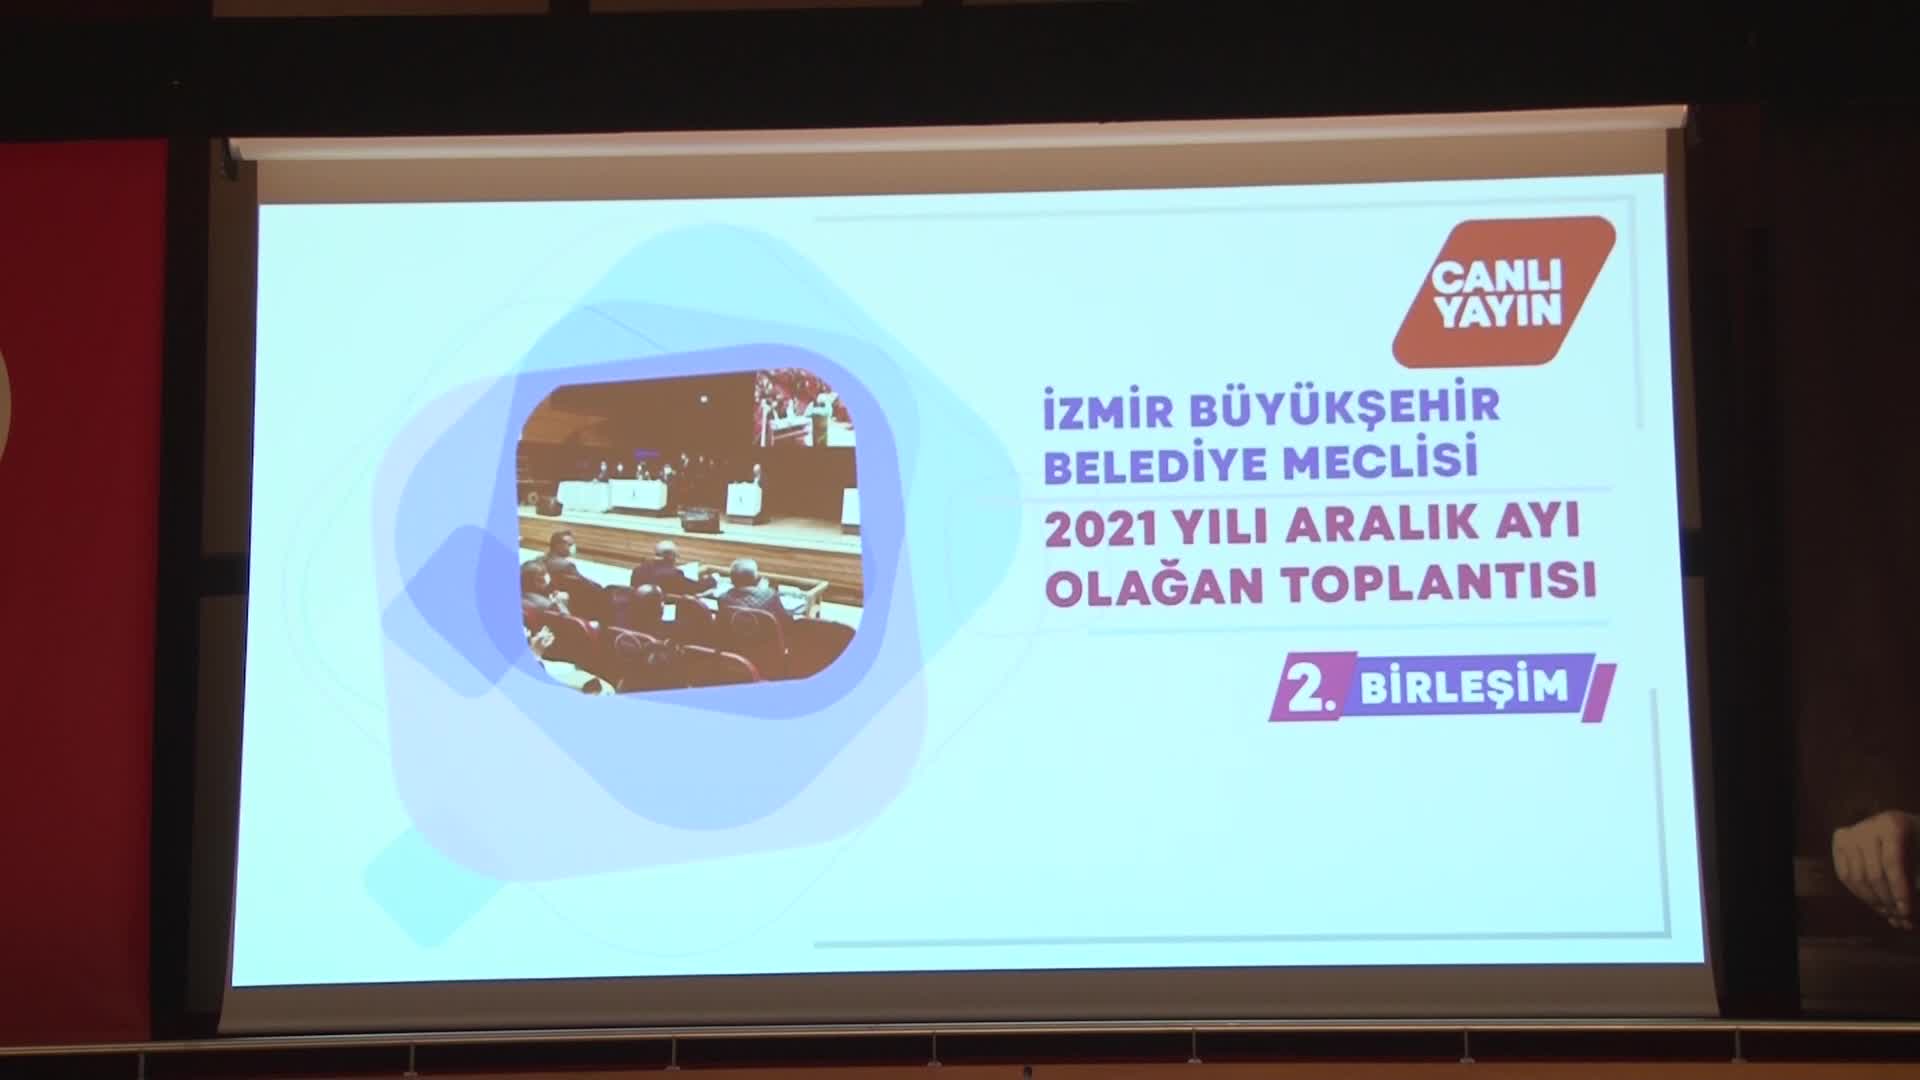 Tunç Soyer: Hazine onay vermediği için Dünya Bankası'nın deprem kredisi İzmir'e kullandırılmadı